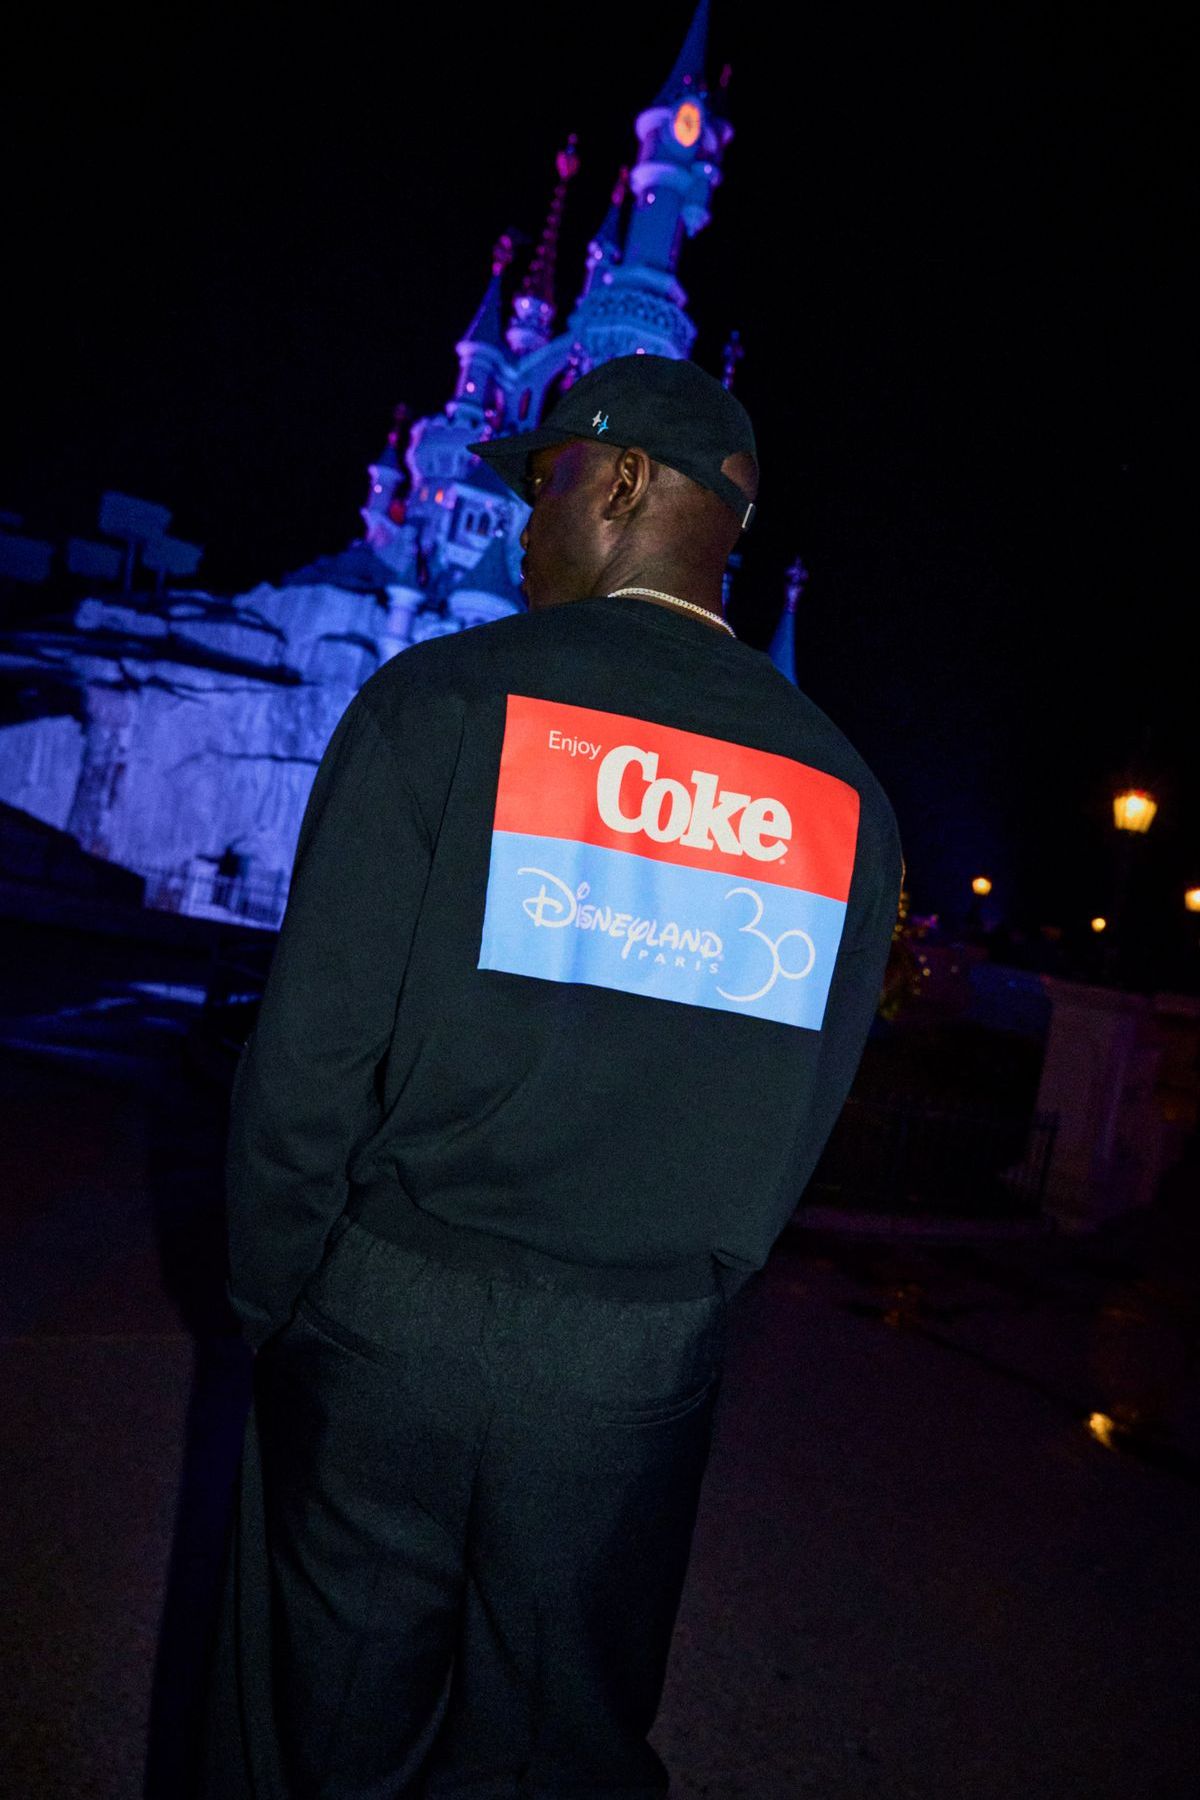 Foto: Coca-Cola und Disneyland Paris